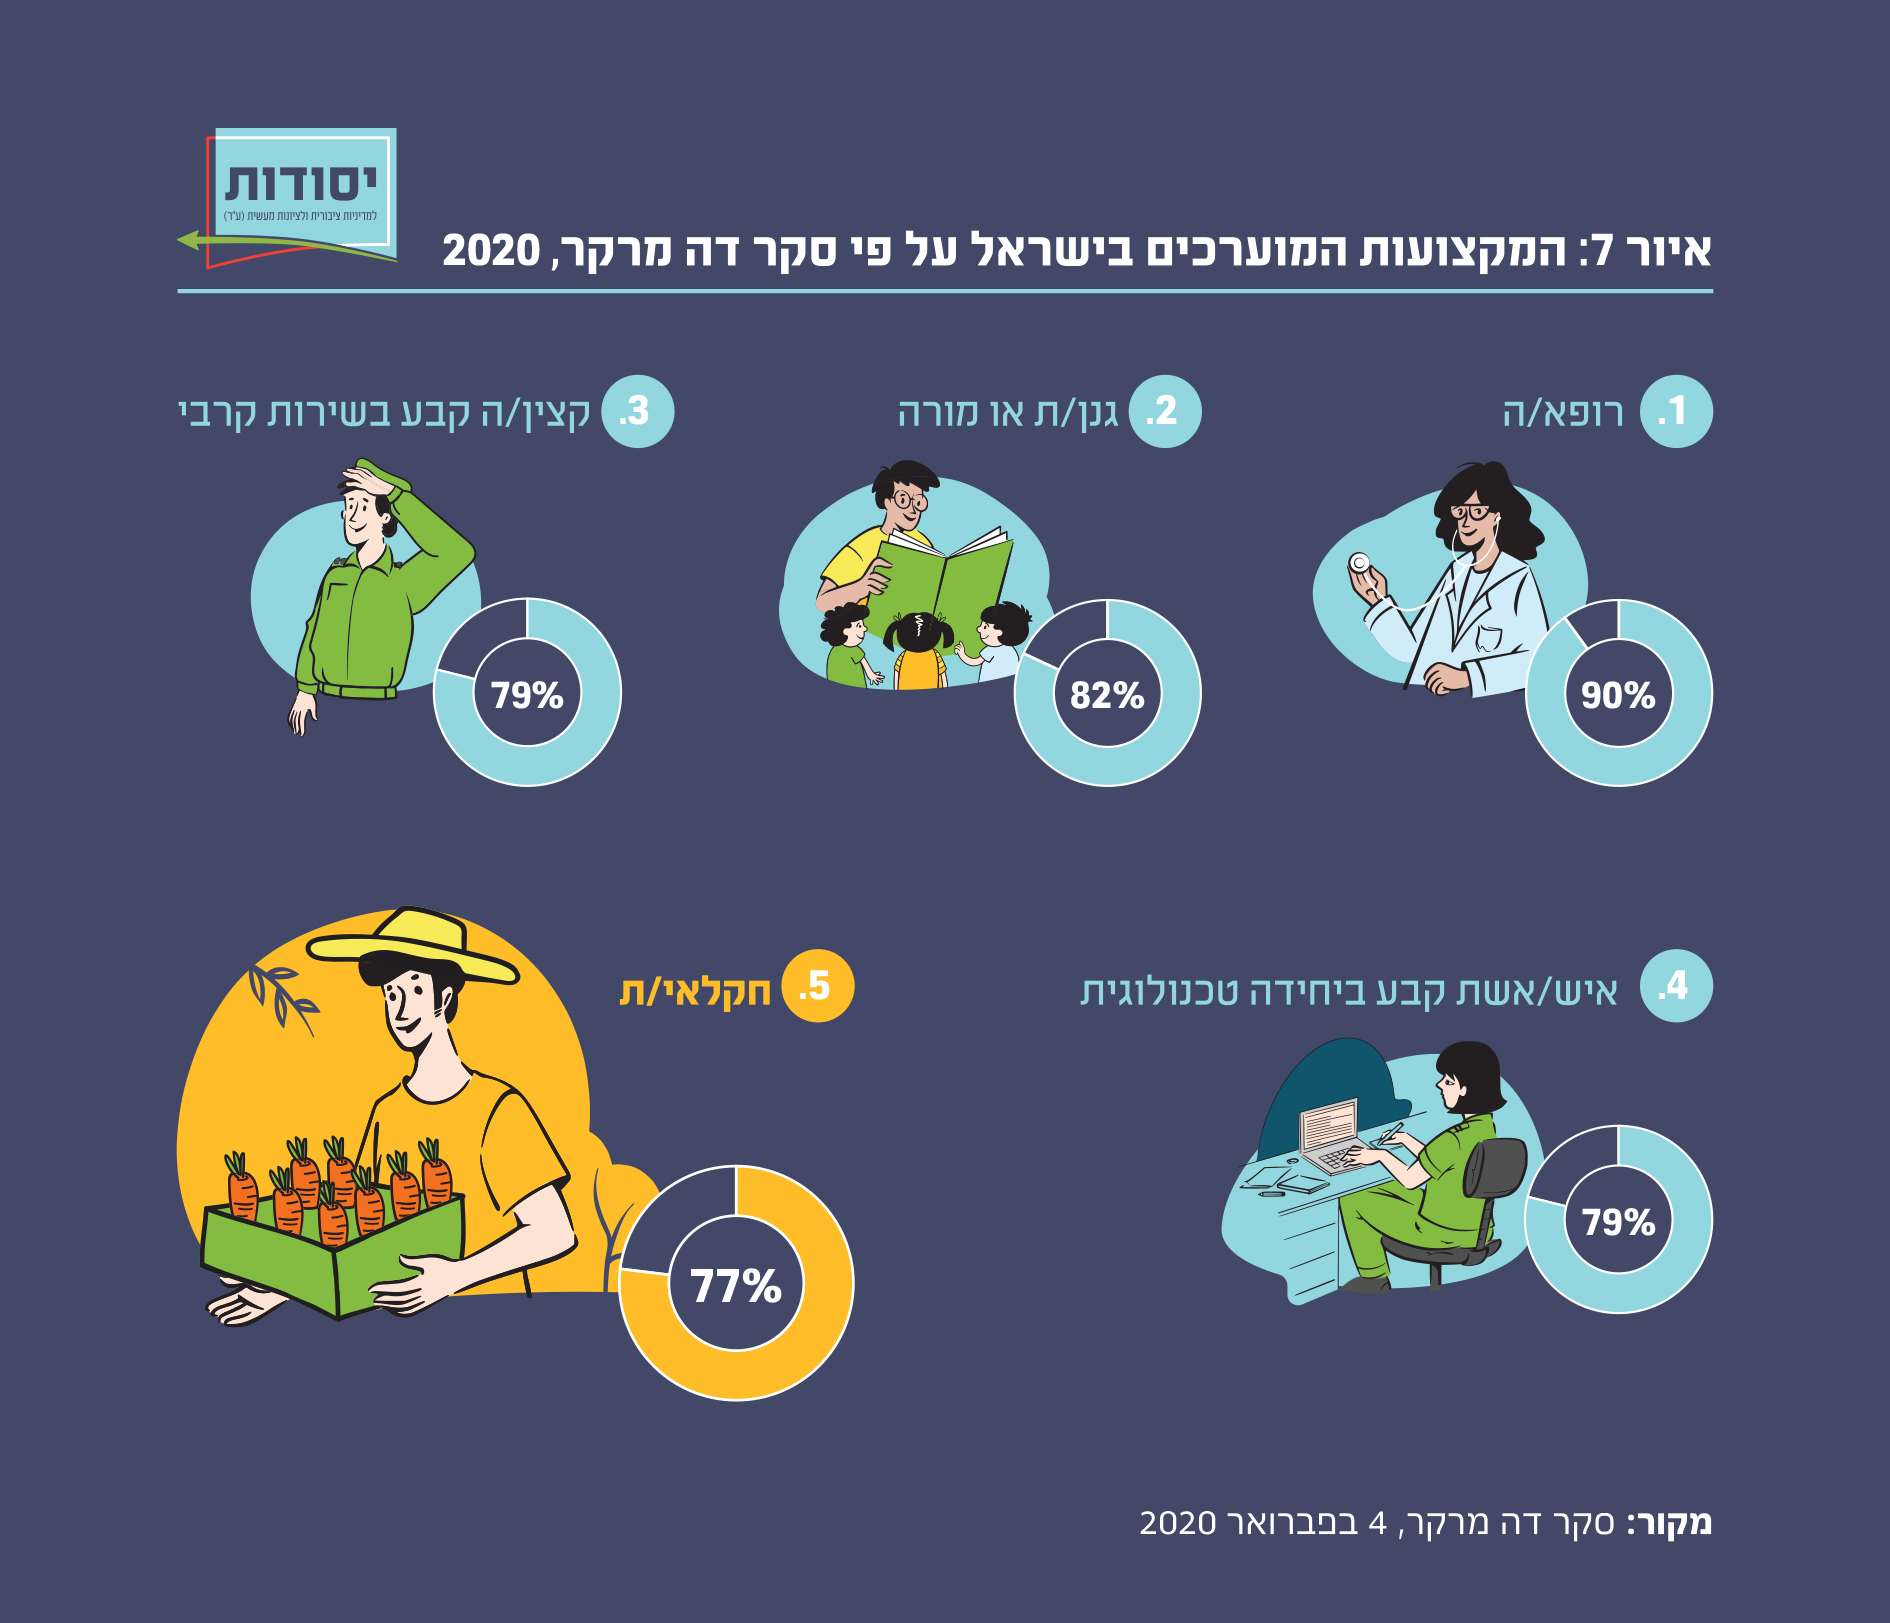 החקלאי הוא מקצוע מוערך בישראל, בעיקר על ידי אנשים צעירים  